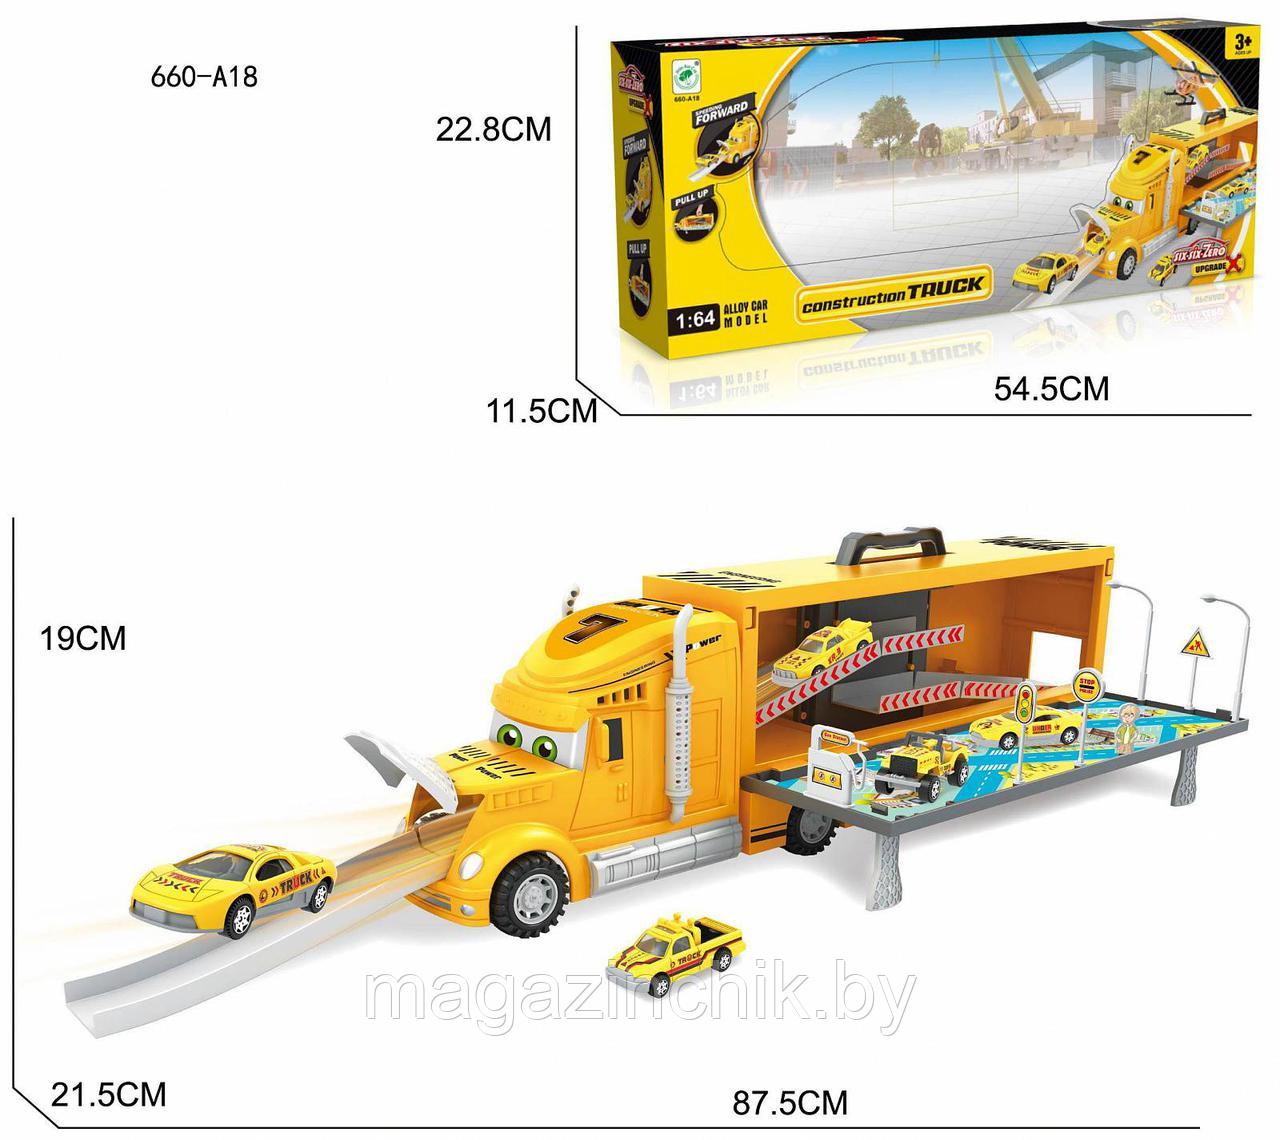 Автовоз 660-A18, желтый, чемоданчик, 87 см длина